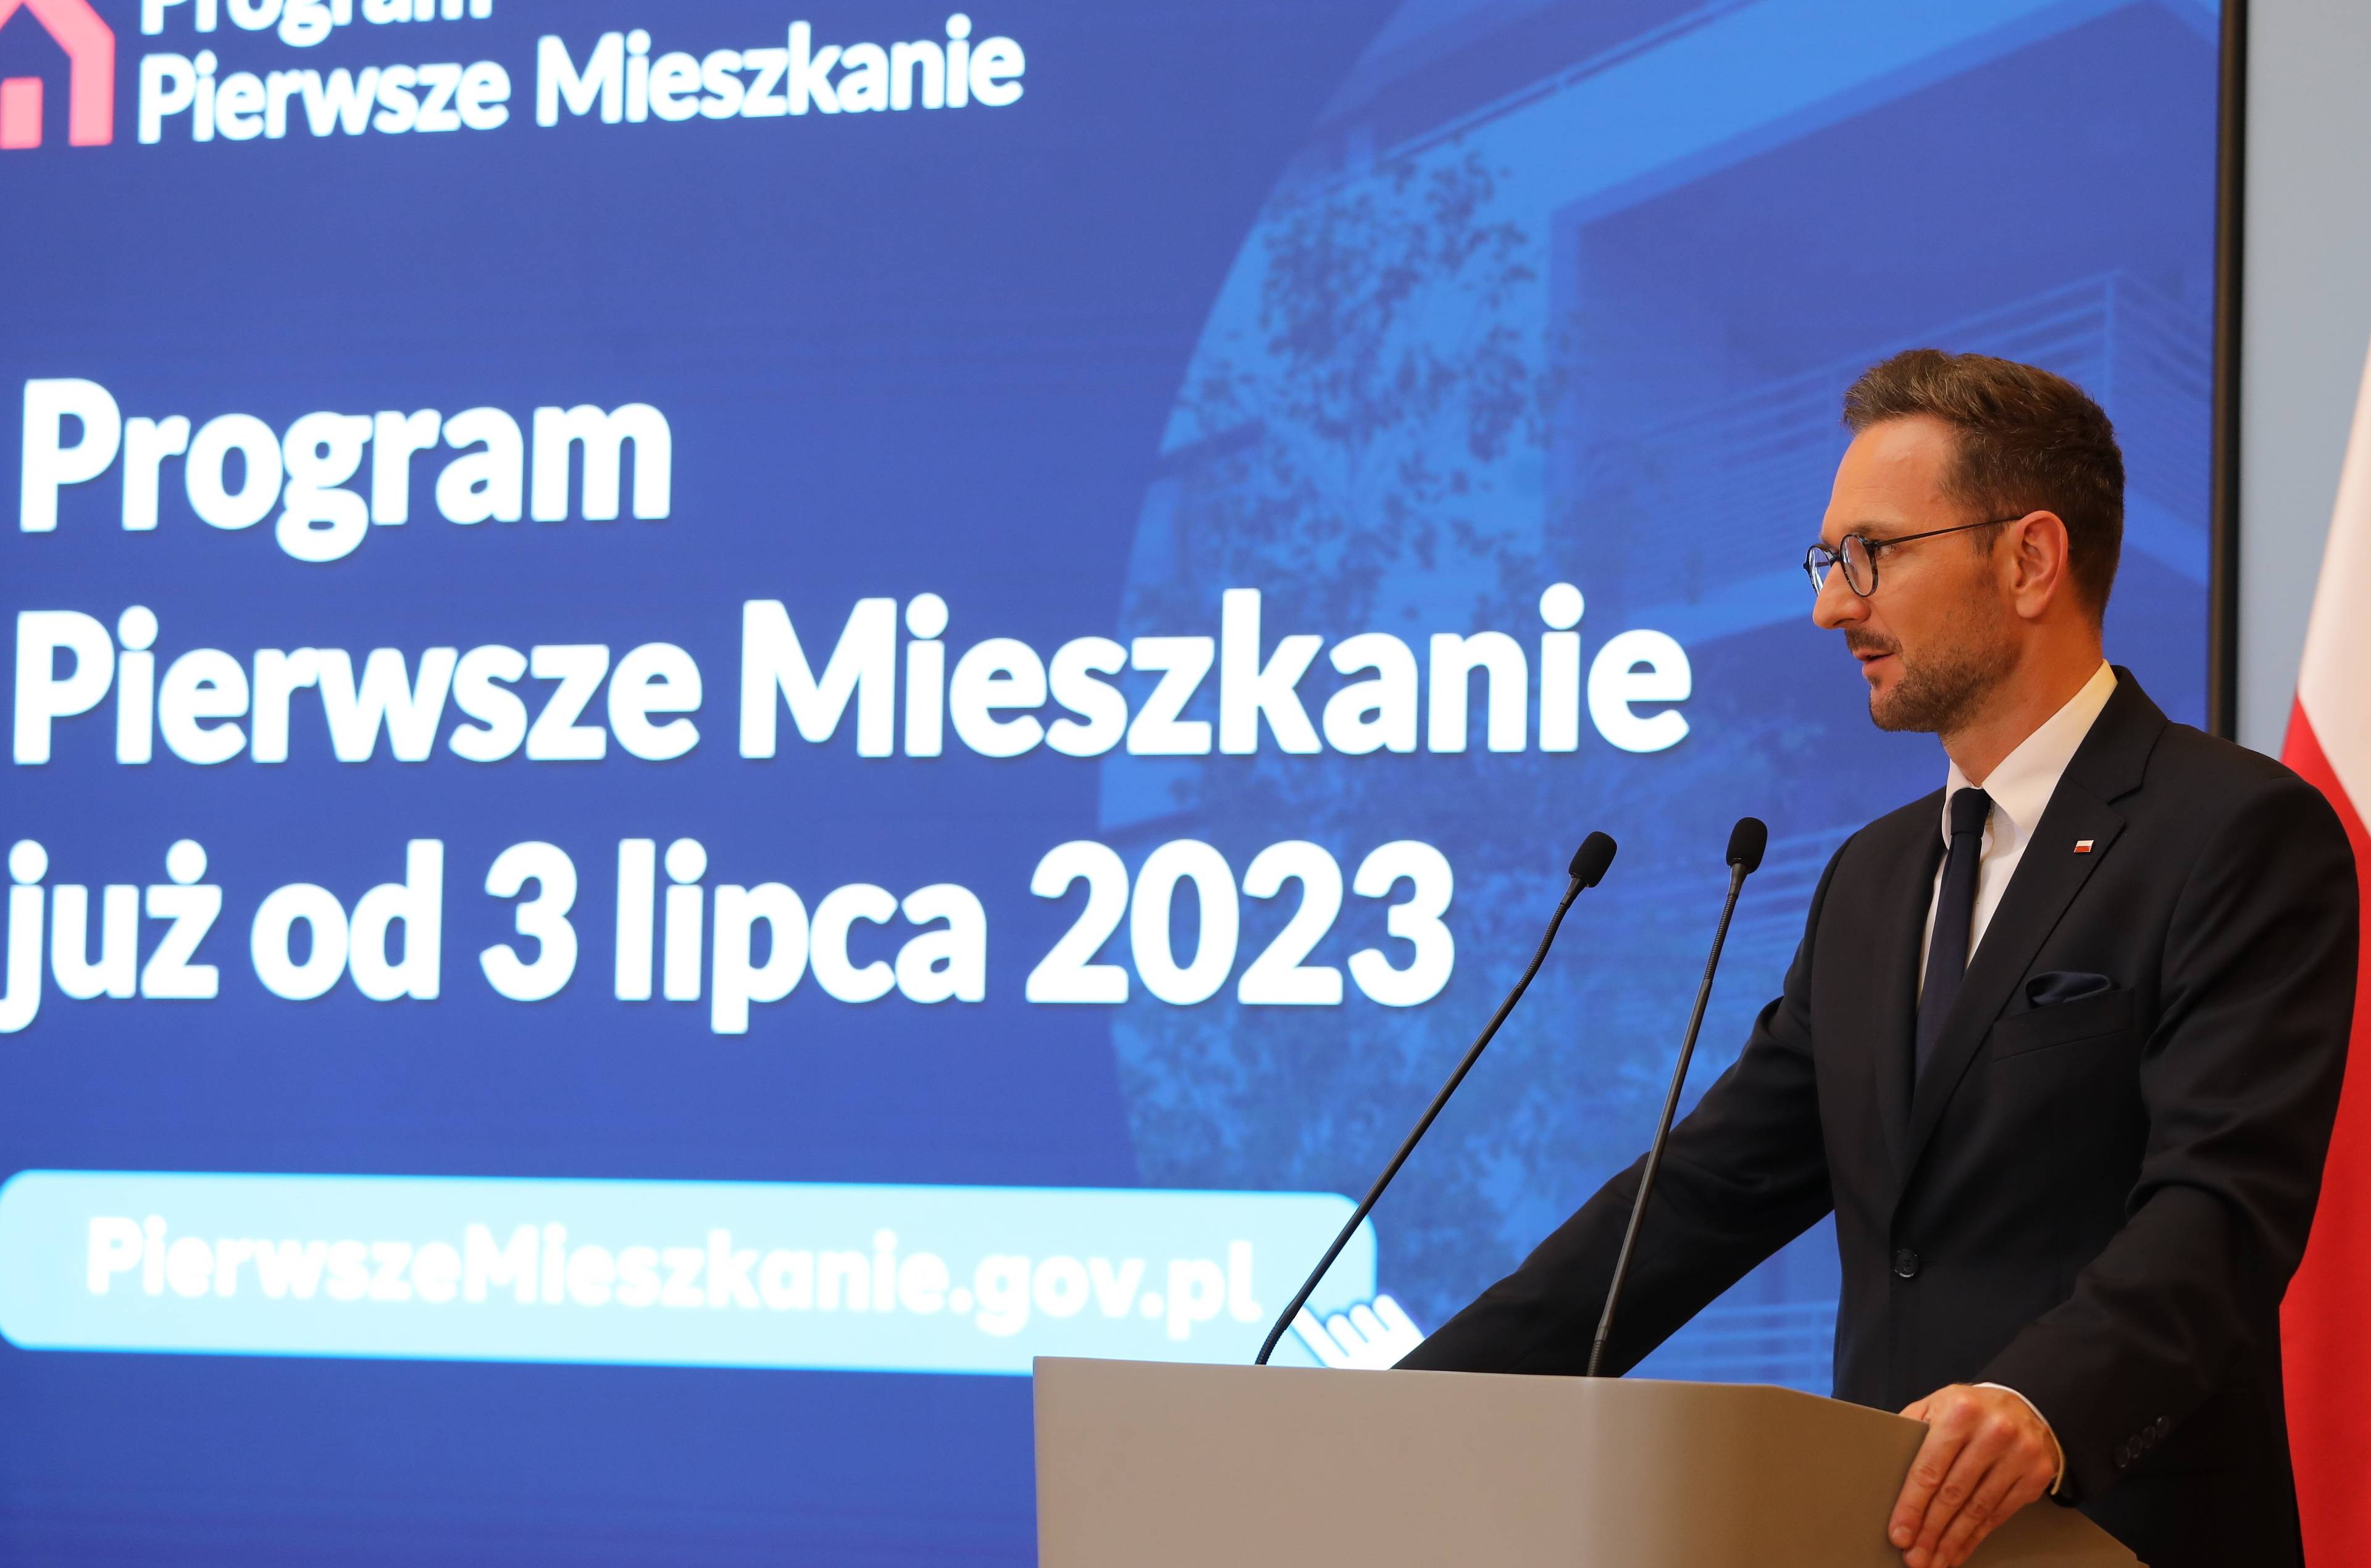 Mężczyzna przy mównicy (Waldemar Buda) na tle napisu "Program Pierwsze Mieszkanie już od 3 lipca 2023"